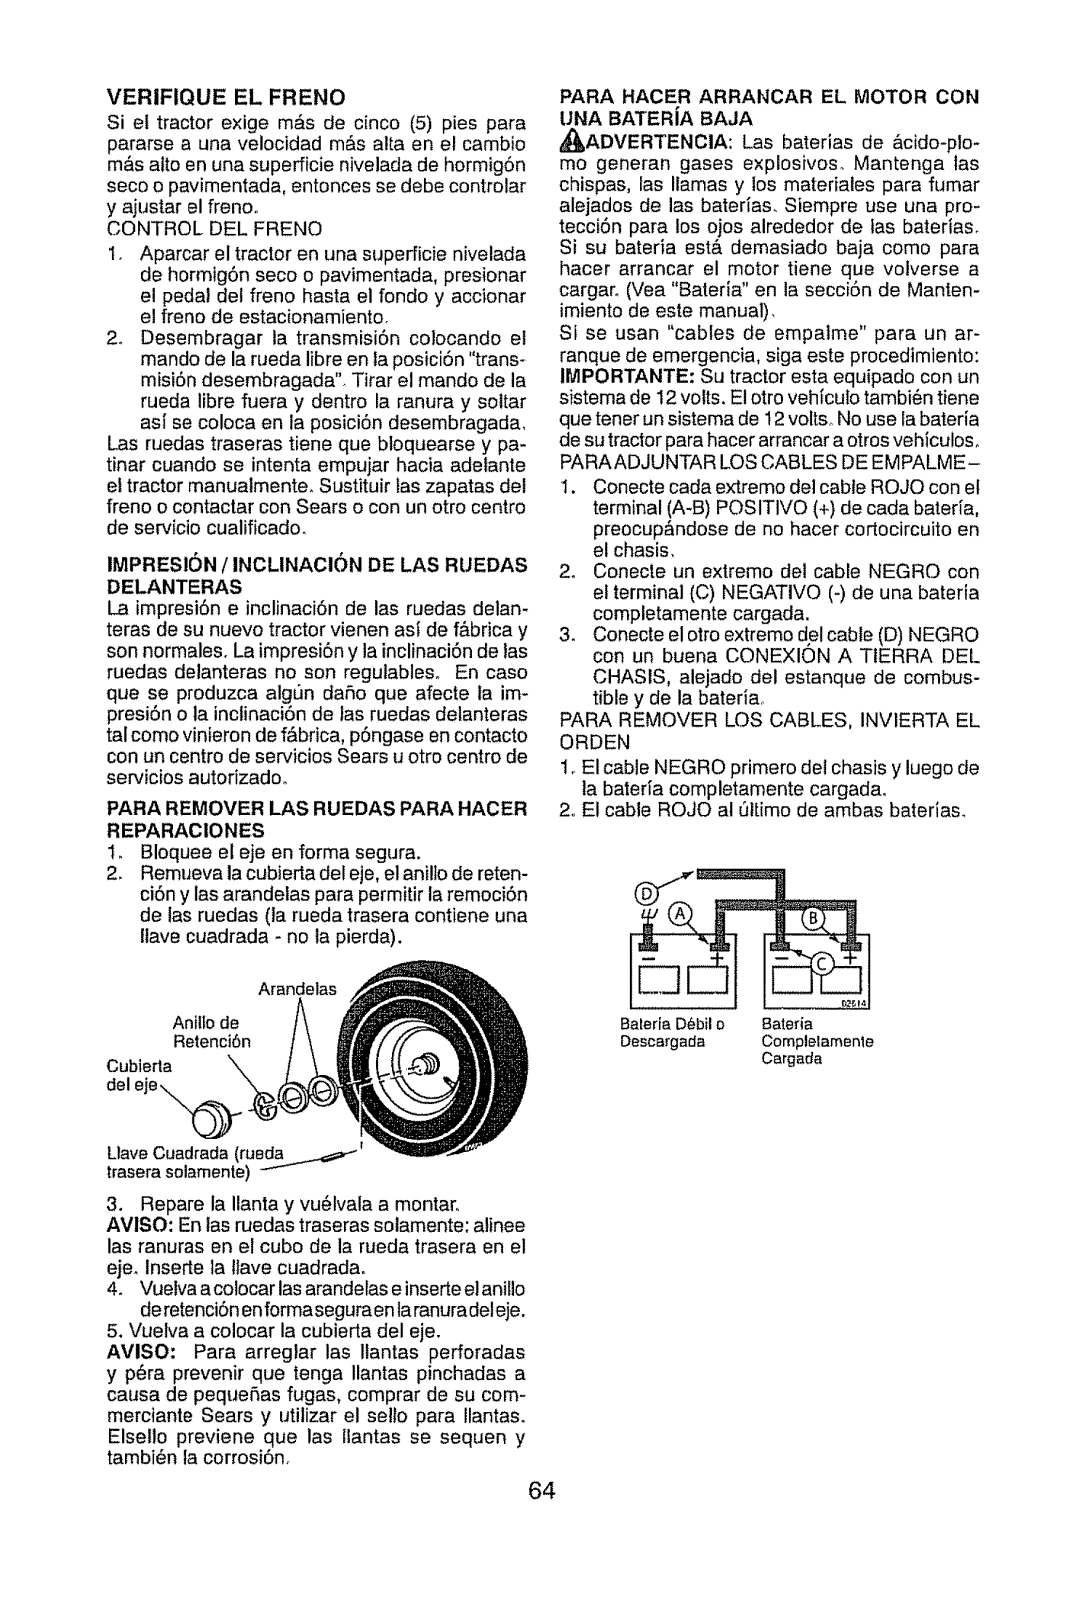 Craftsman 917.289470 manual Verifique El Freno, IMPRESlON / INCLINACION DE LAS RUEDAS DELANTERAS 